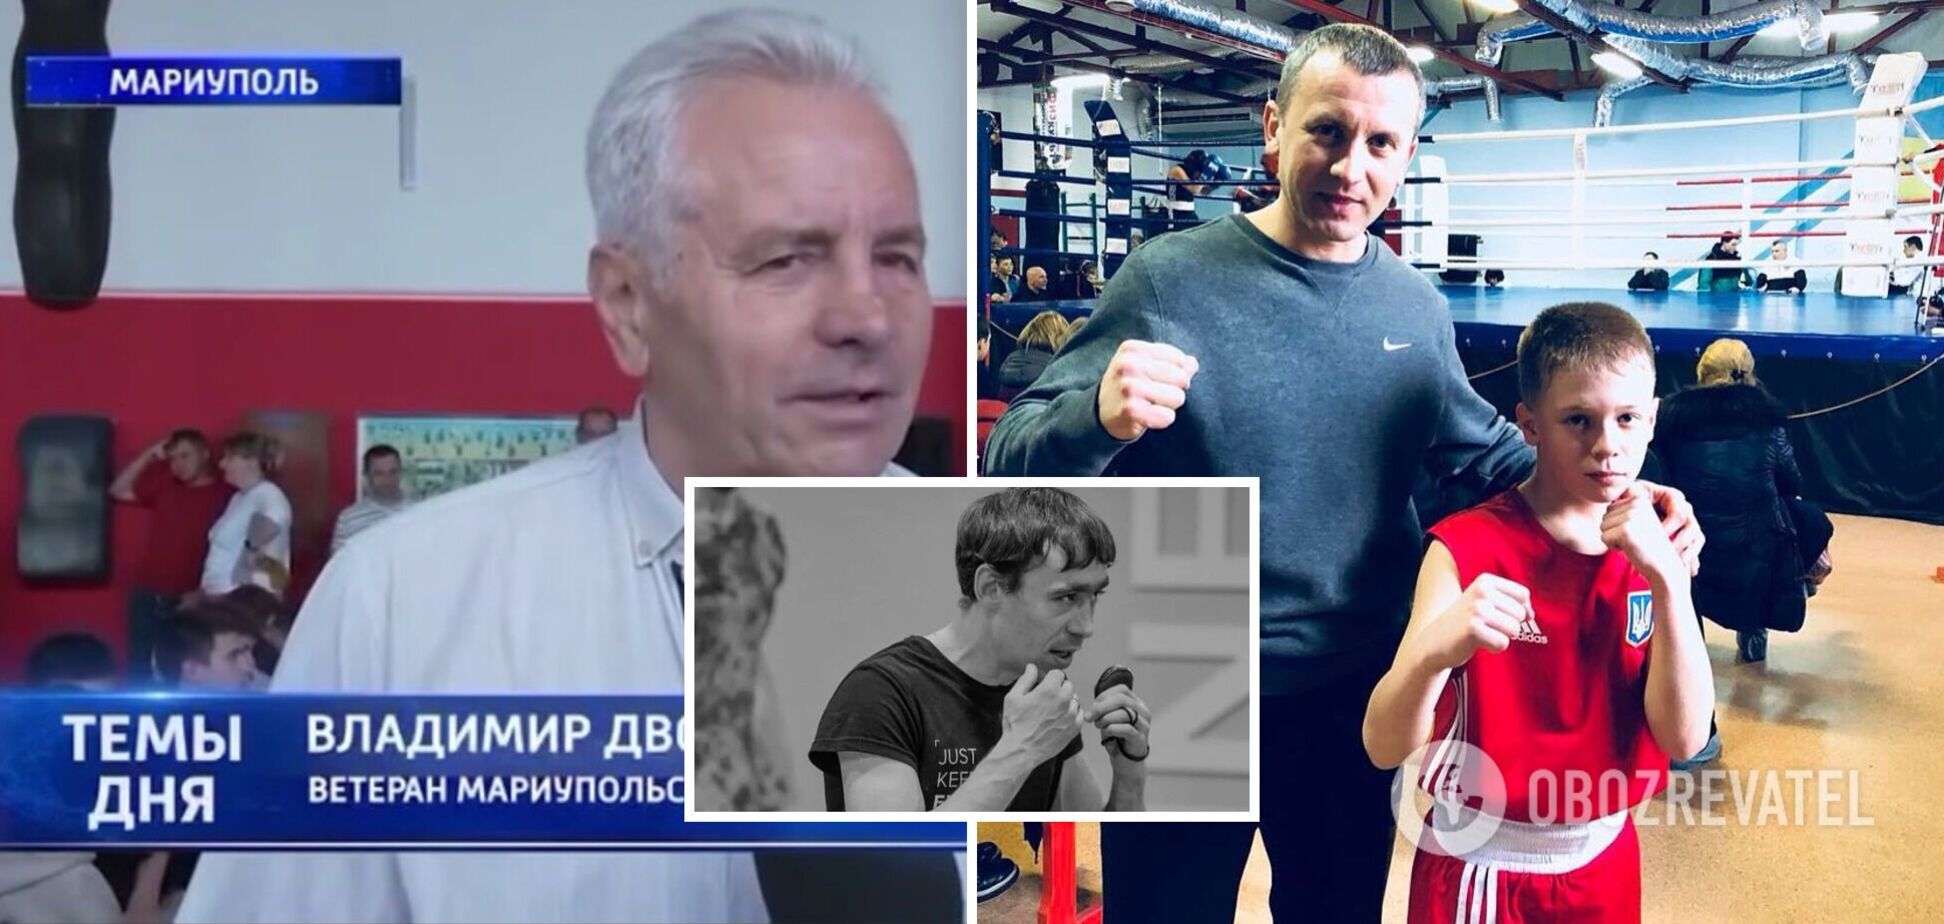 Тренер казненного россиянами боксера сборной Украины поддерживает оккупантов и посетил турнир 'освободителей' в Мариуполе